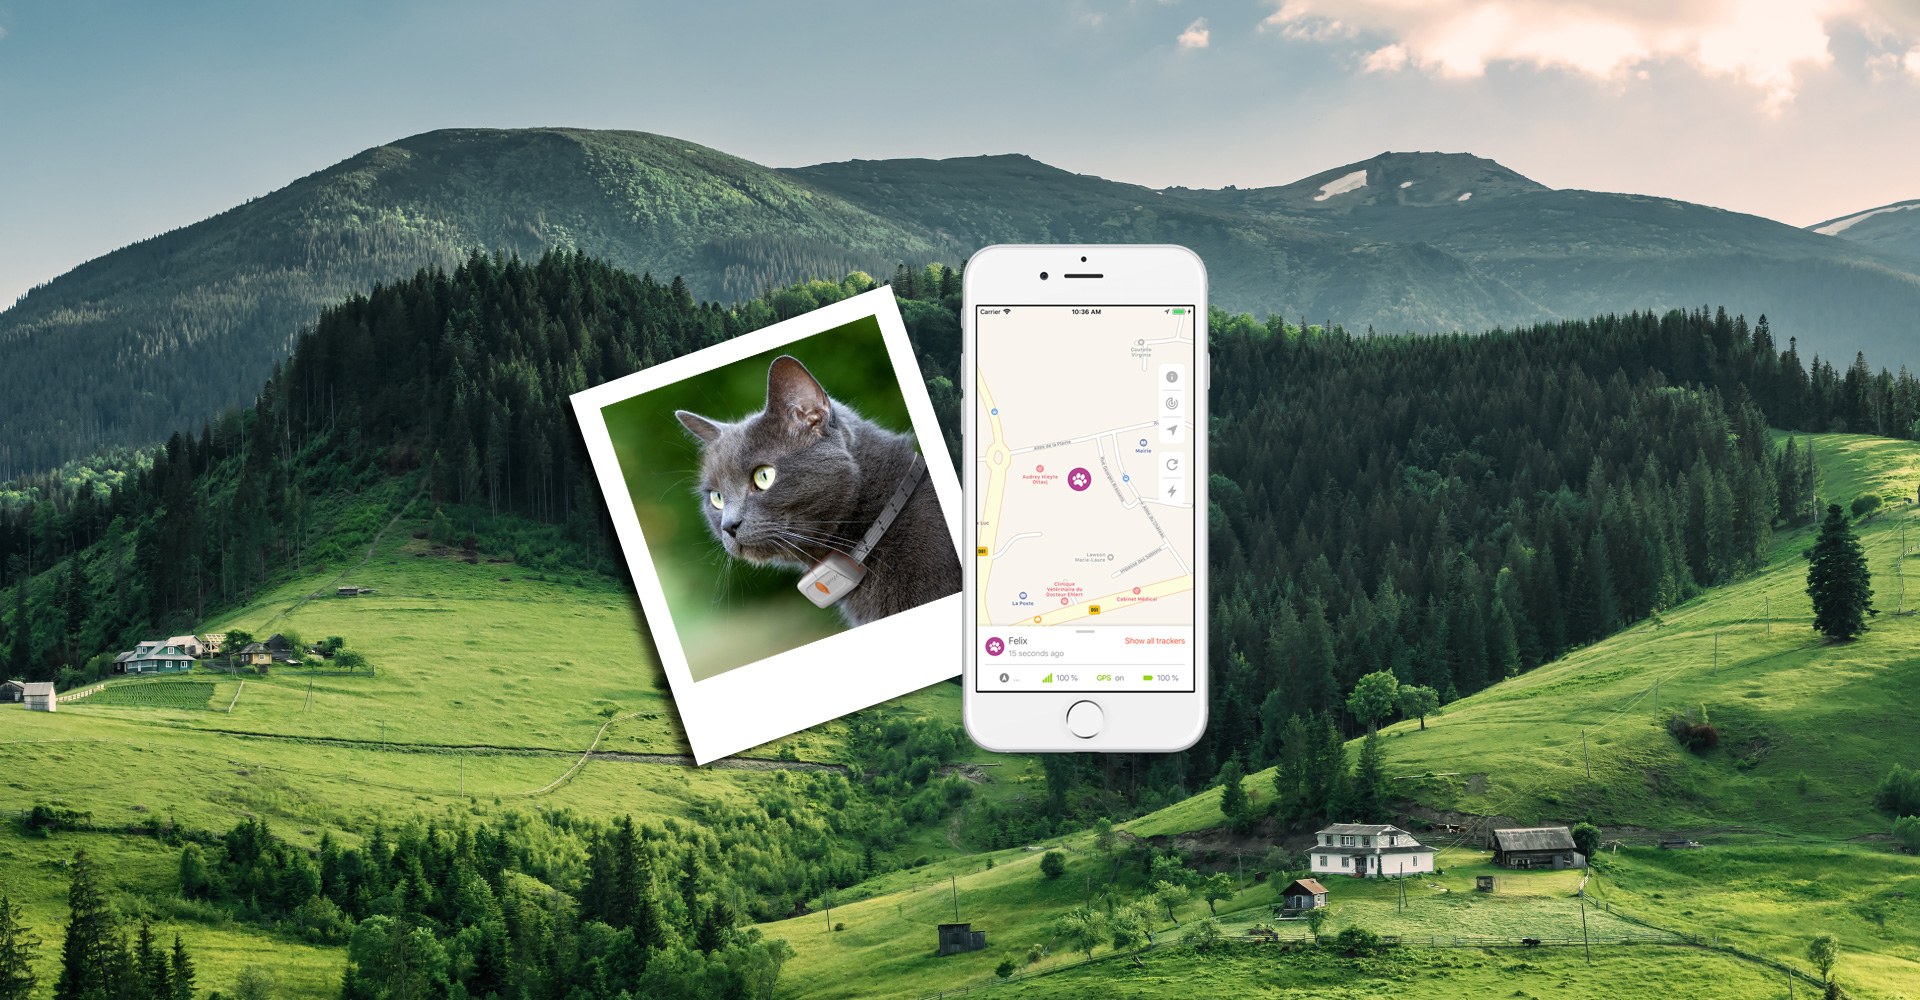 Weenect® - GPS en App Store